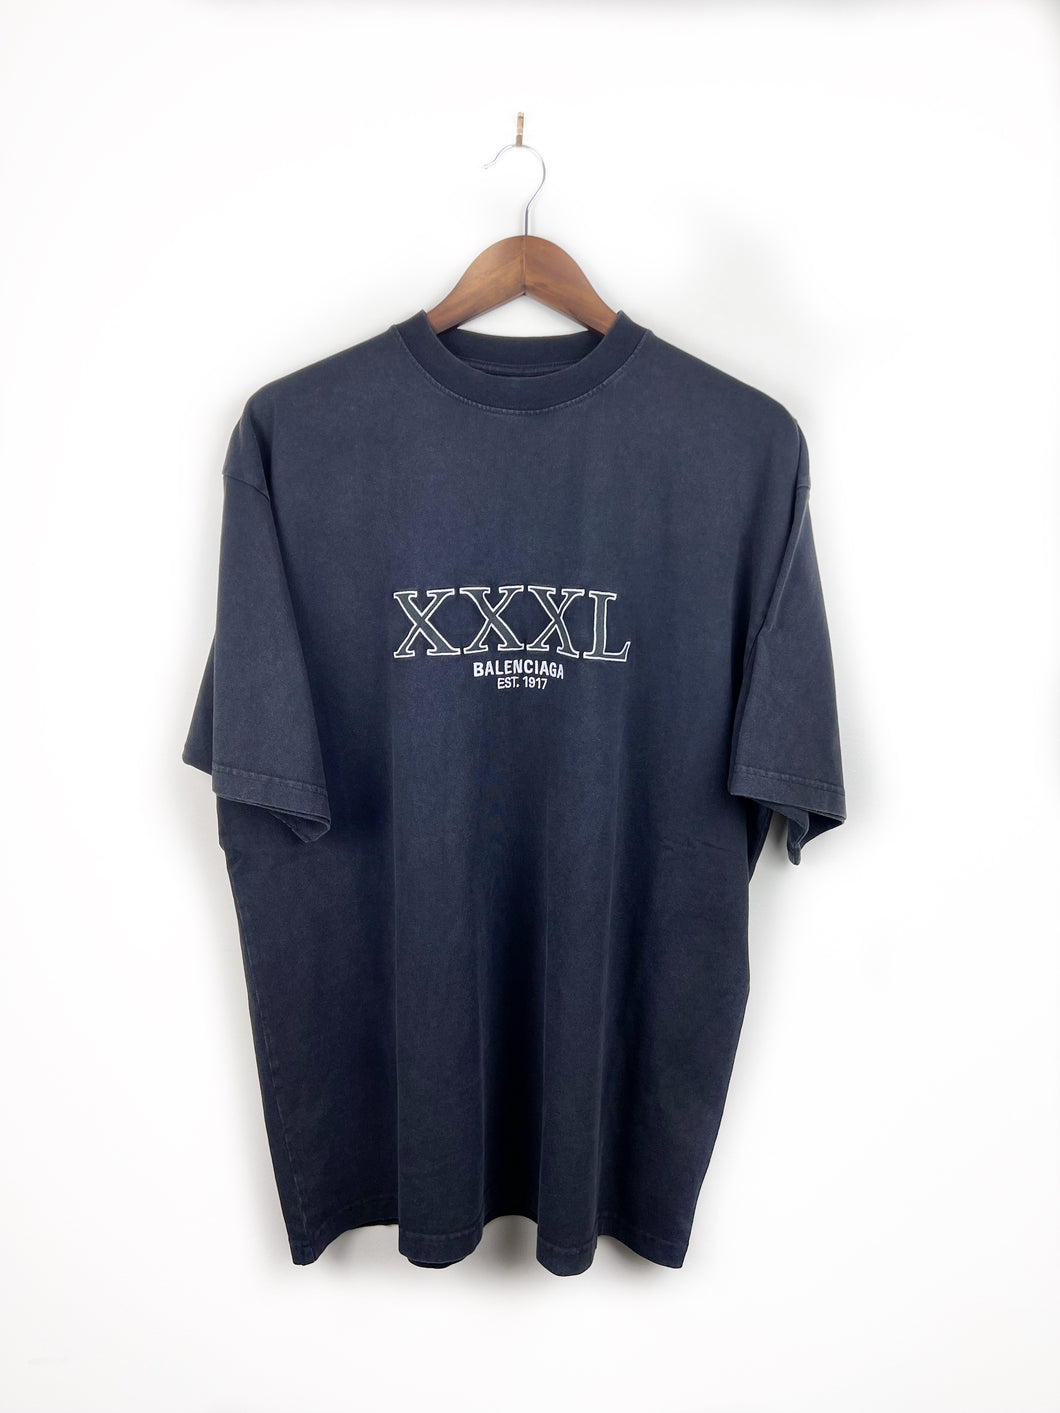 FW22 Balenciaga XXXL Oversized Embroidered T-Shirt - Size Small